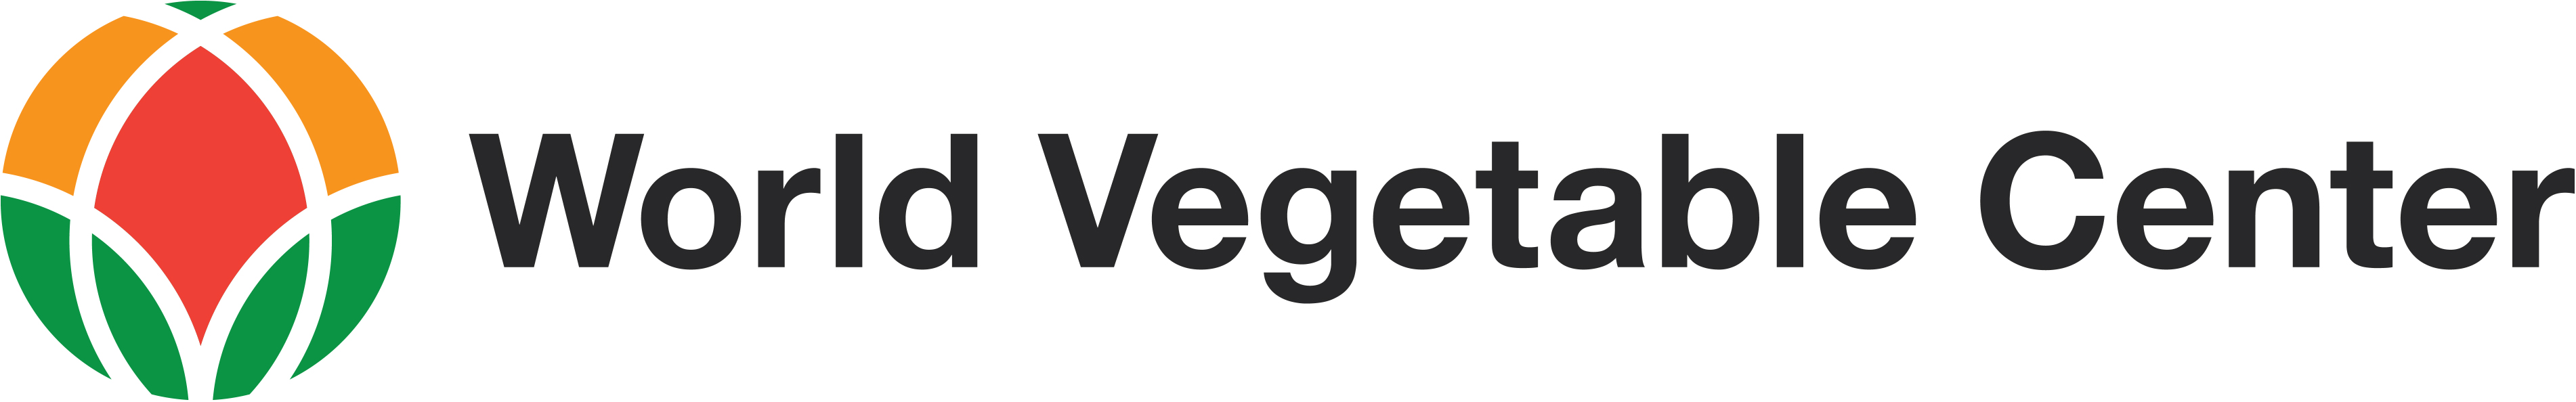 logo World Vegetable Center